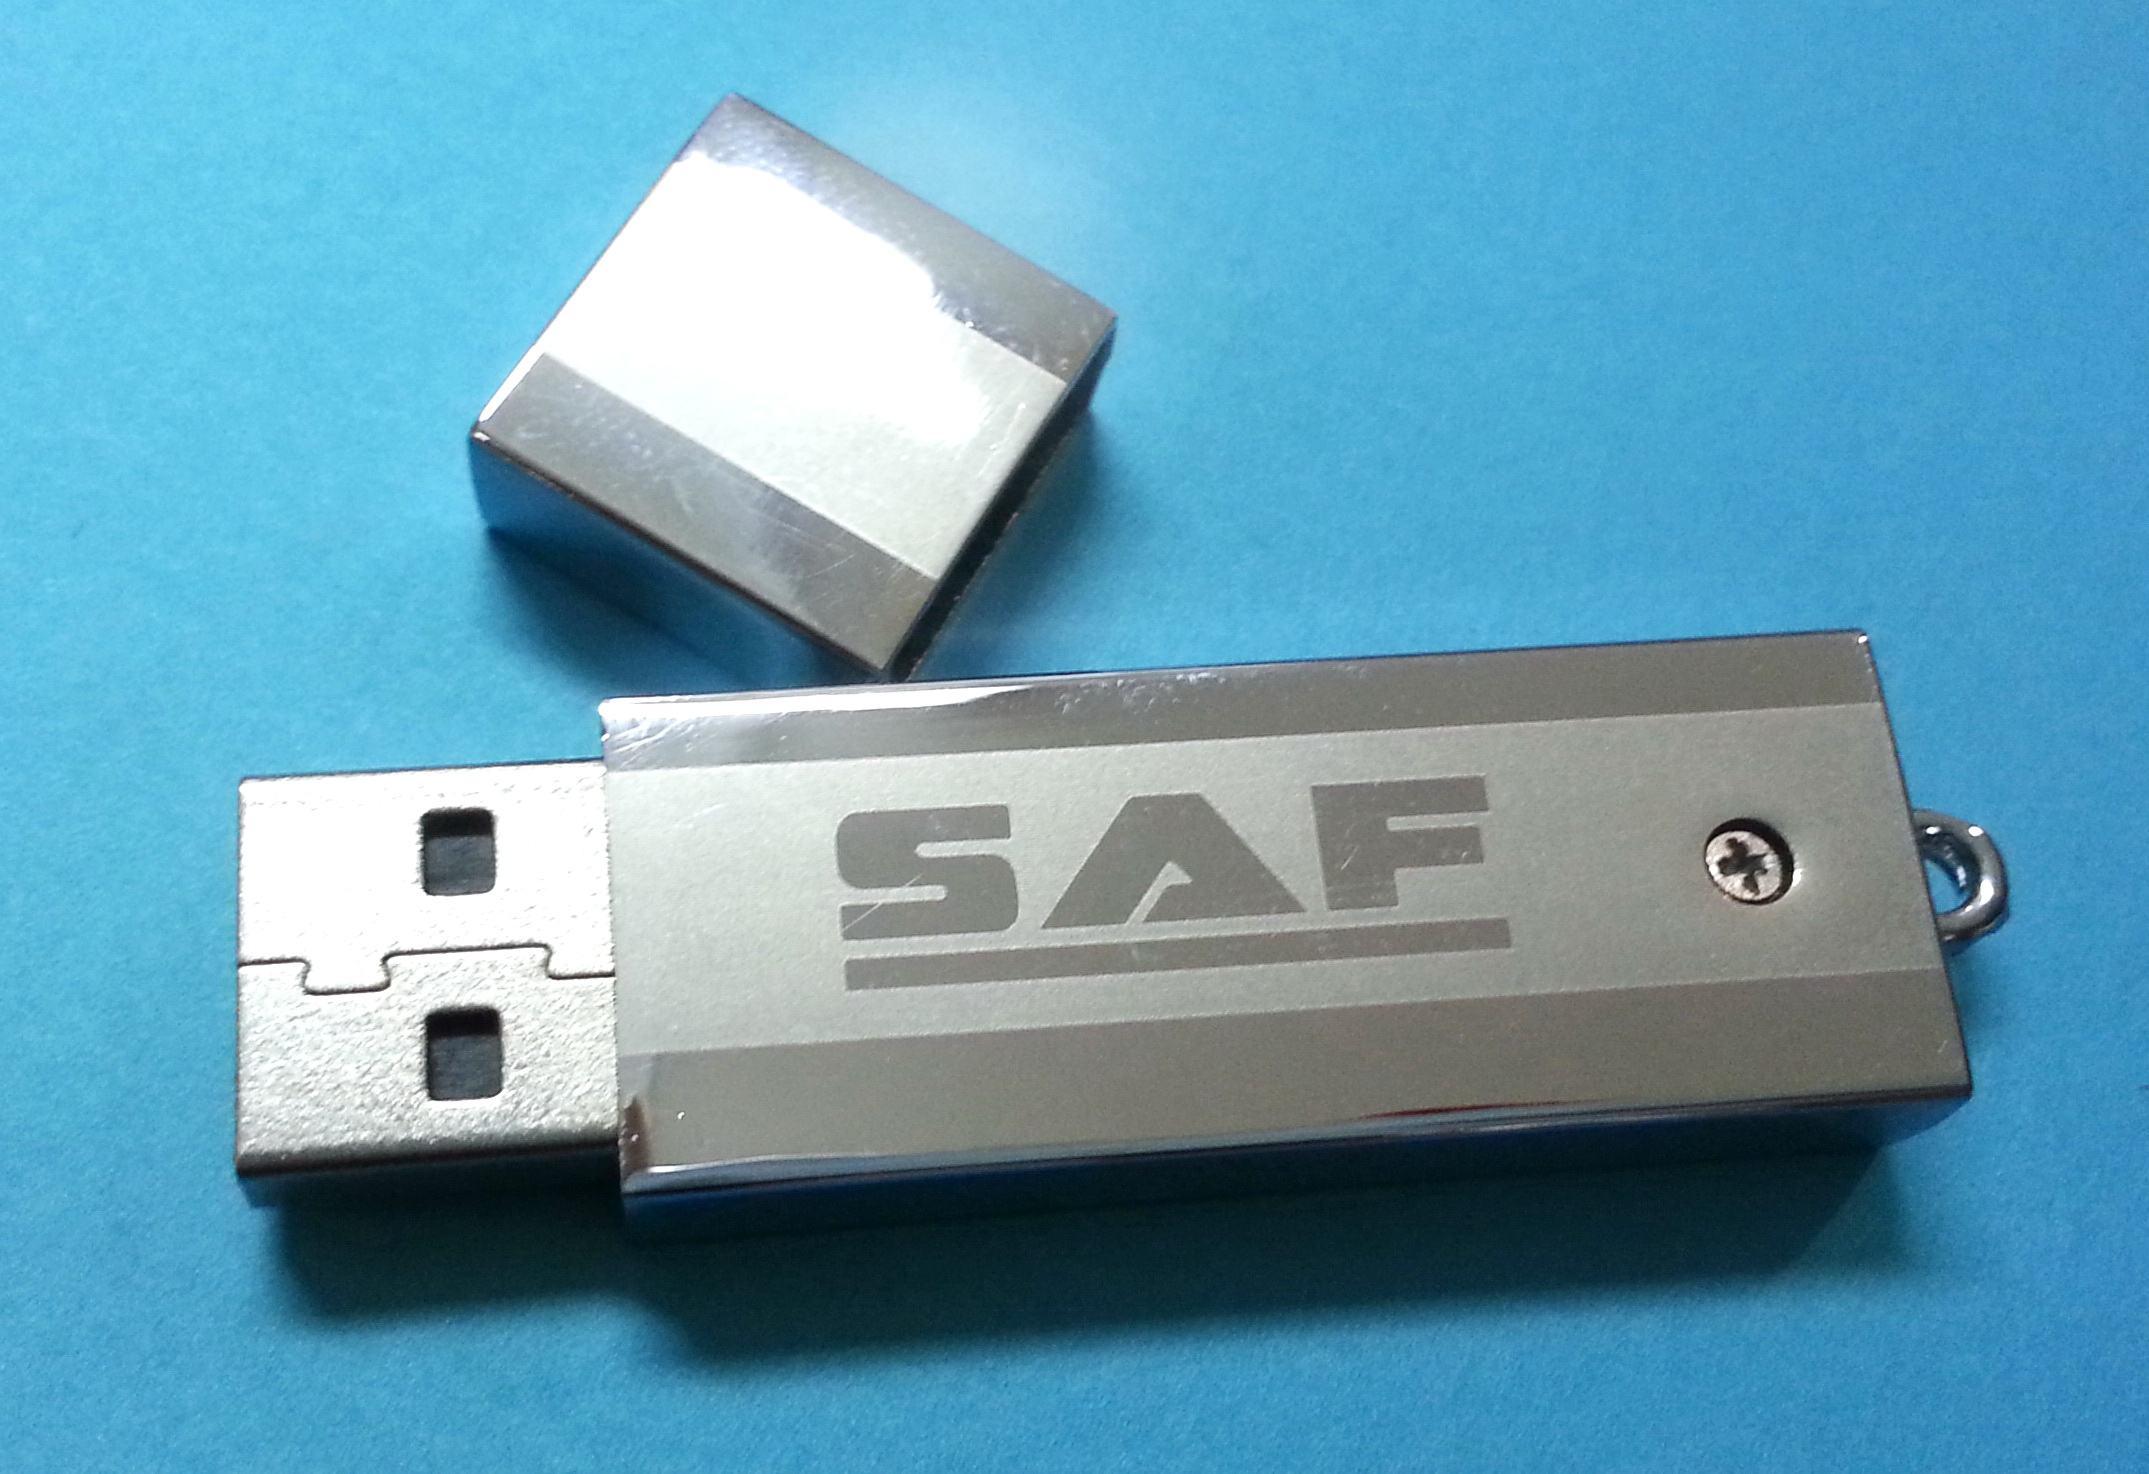 USB S.A.F